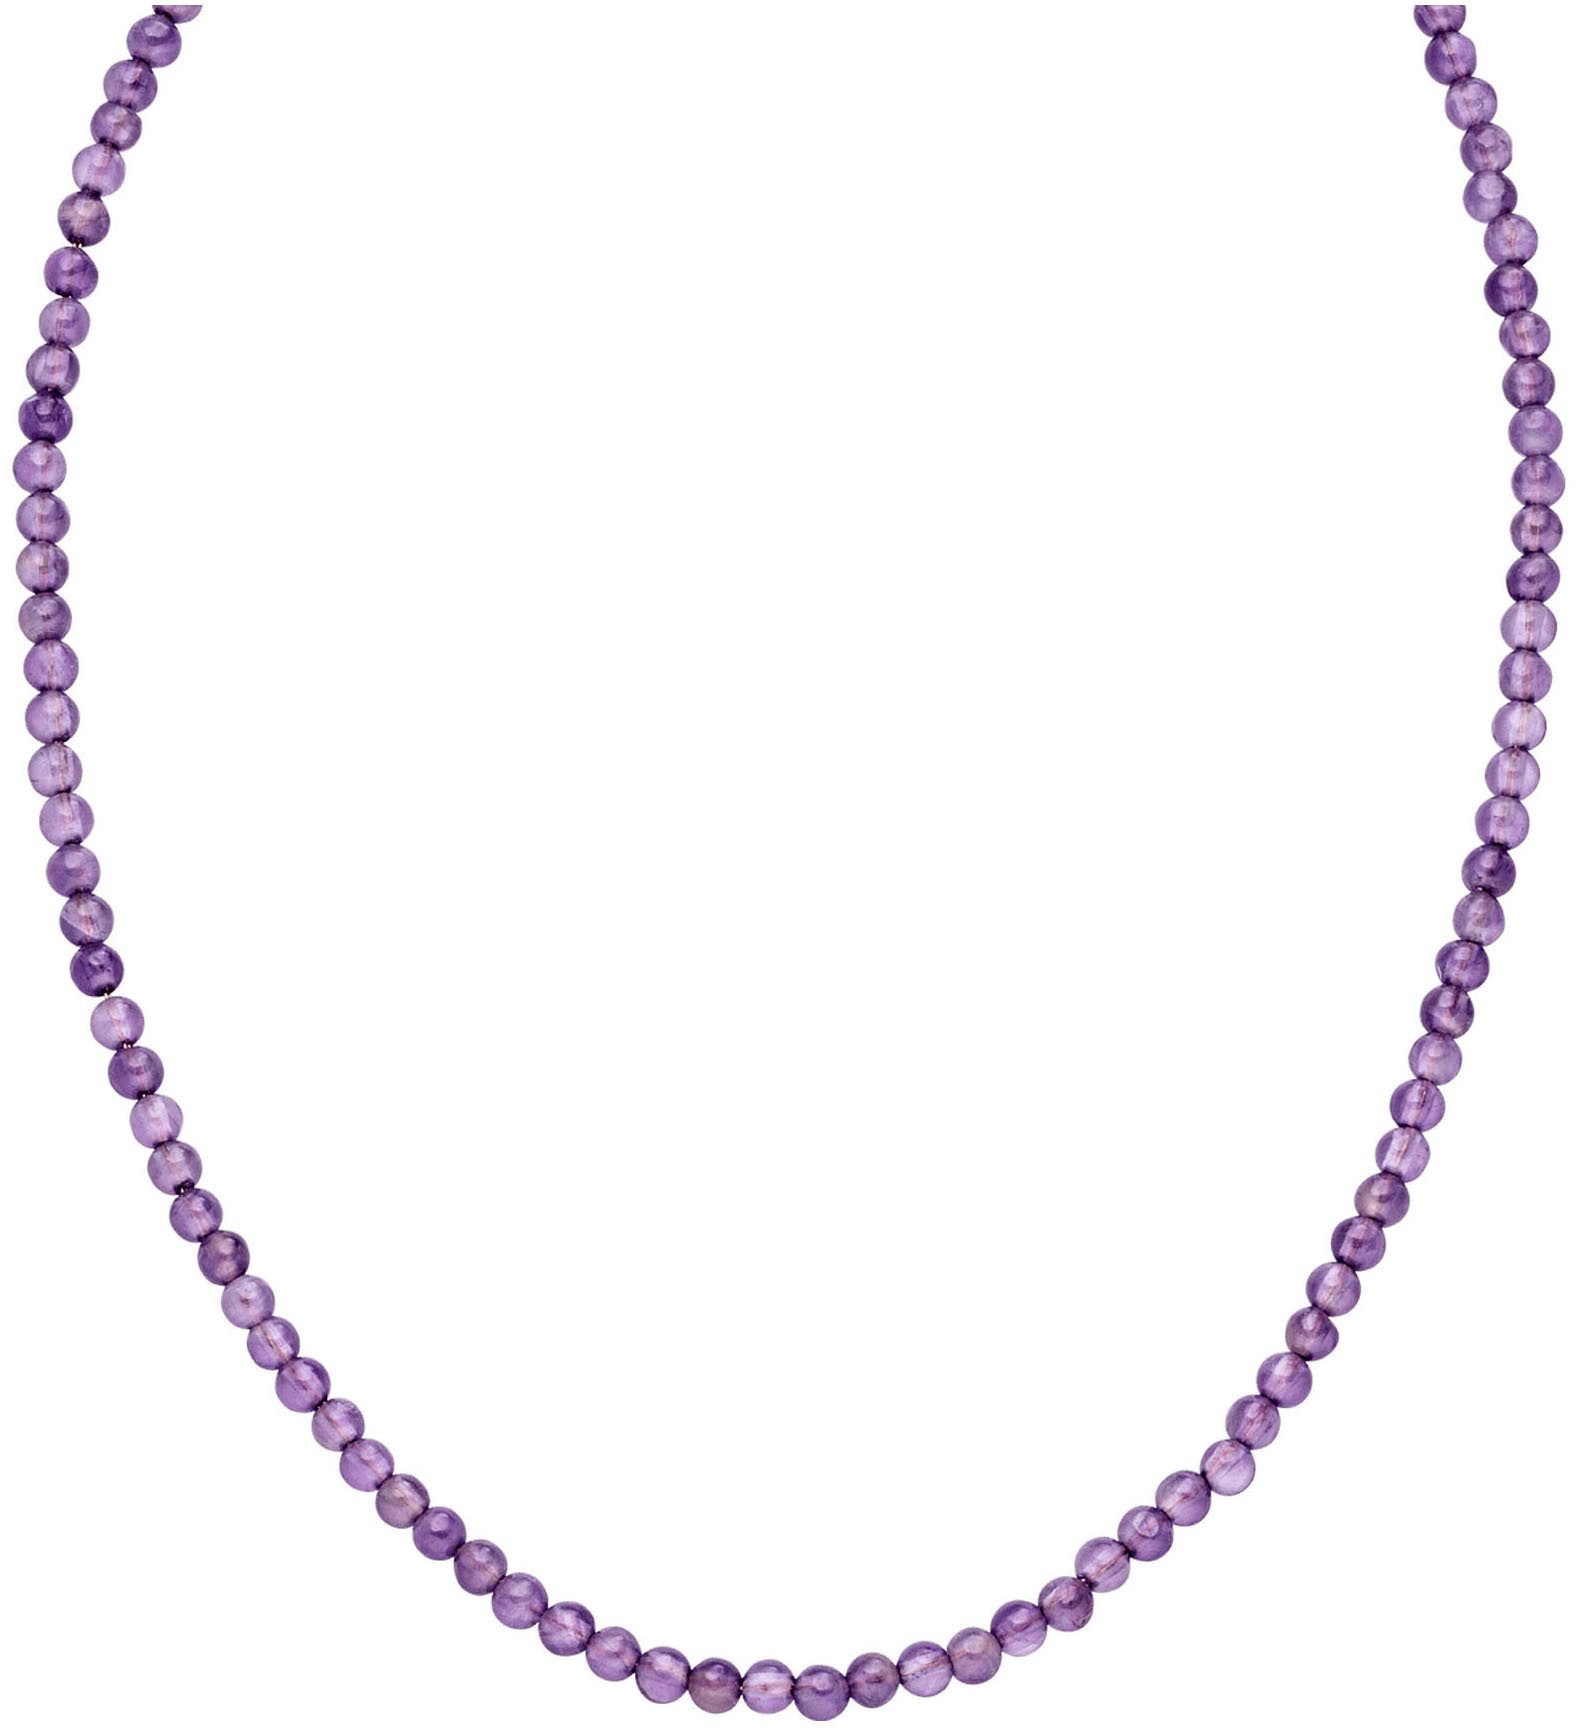 Purelei Perlenkette Schmuck Geschenk Edelstein, 23381, mit Amethyst oder Aventurin